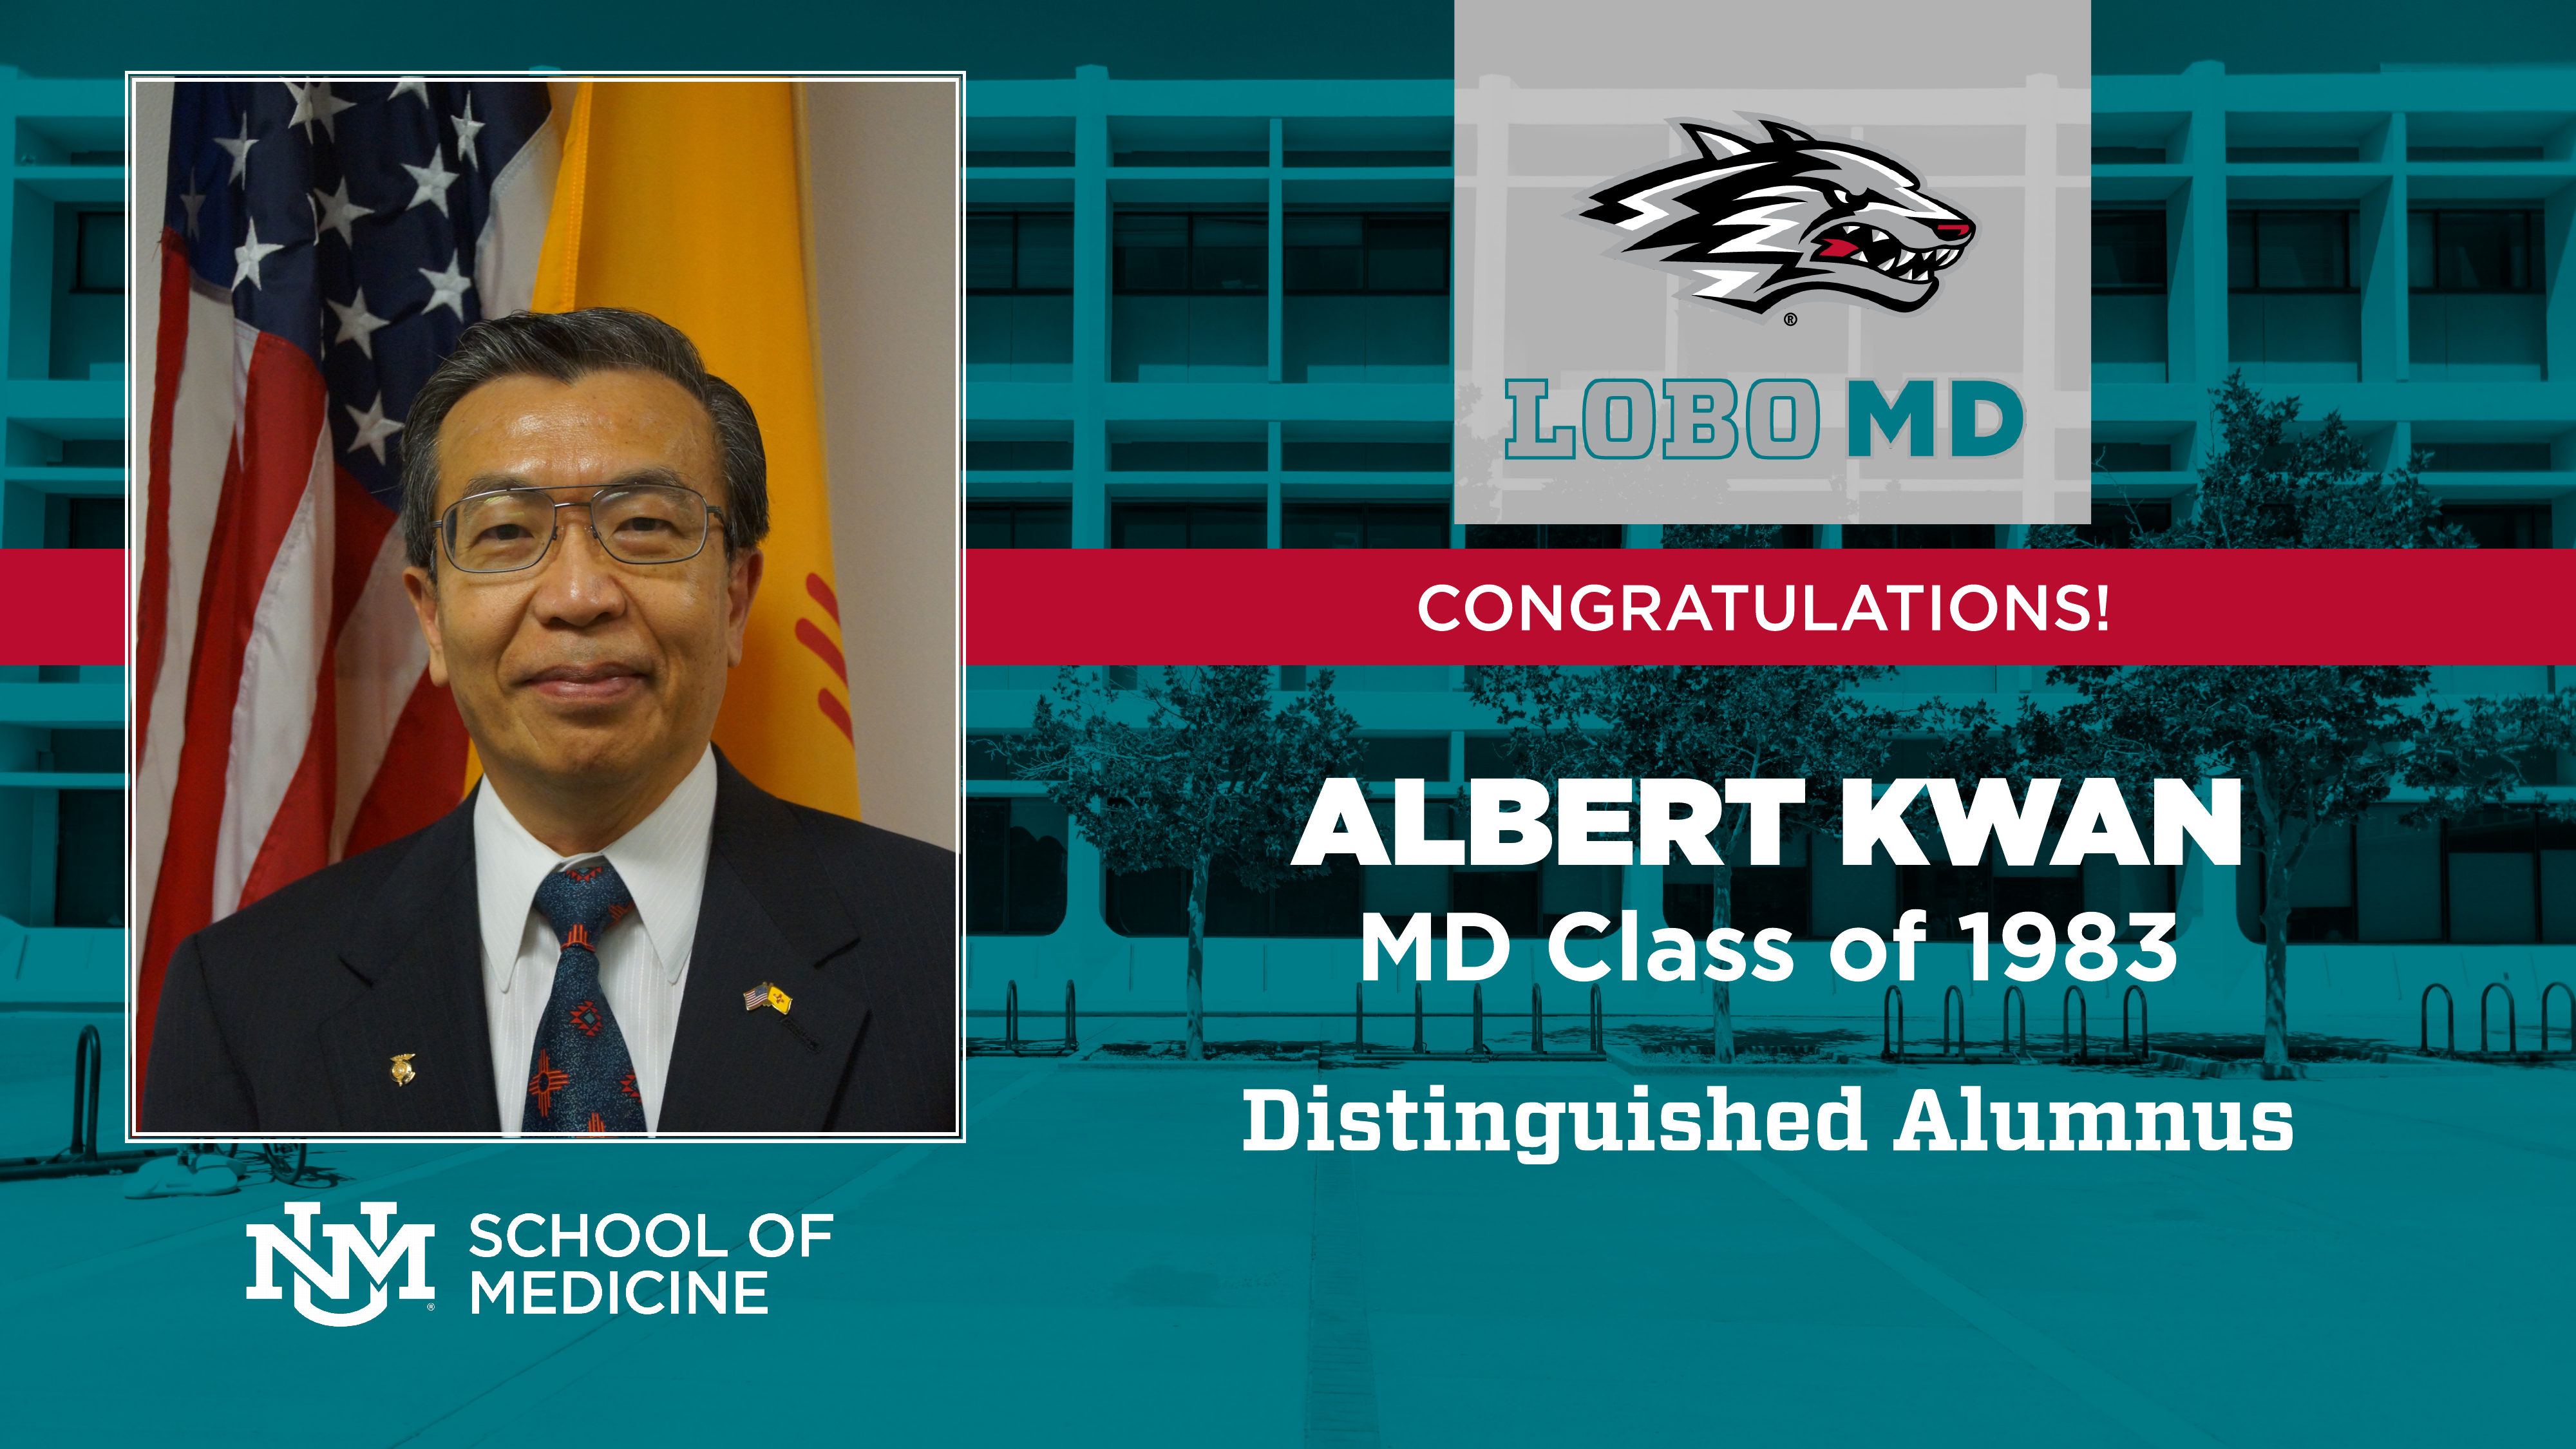 Dr Albert Kwan